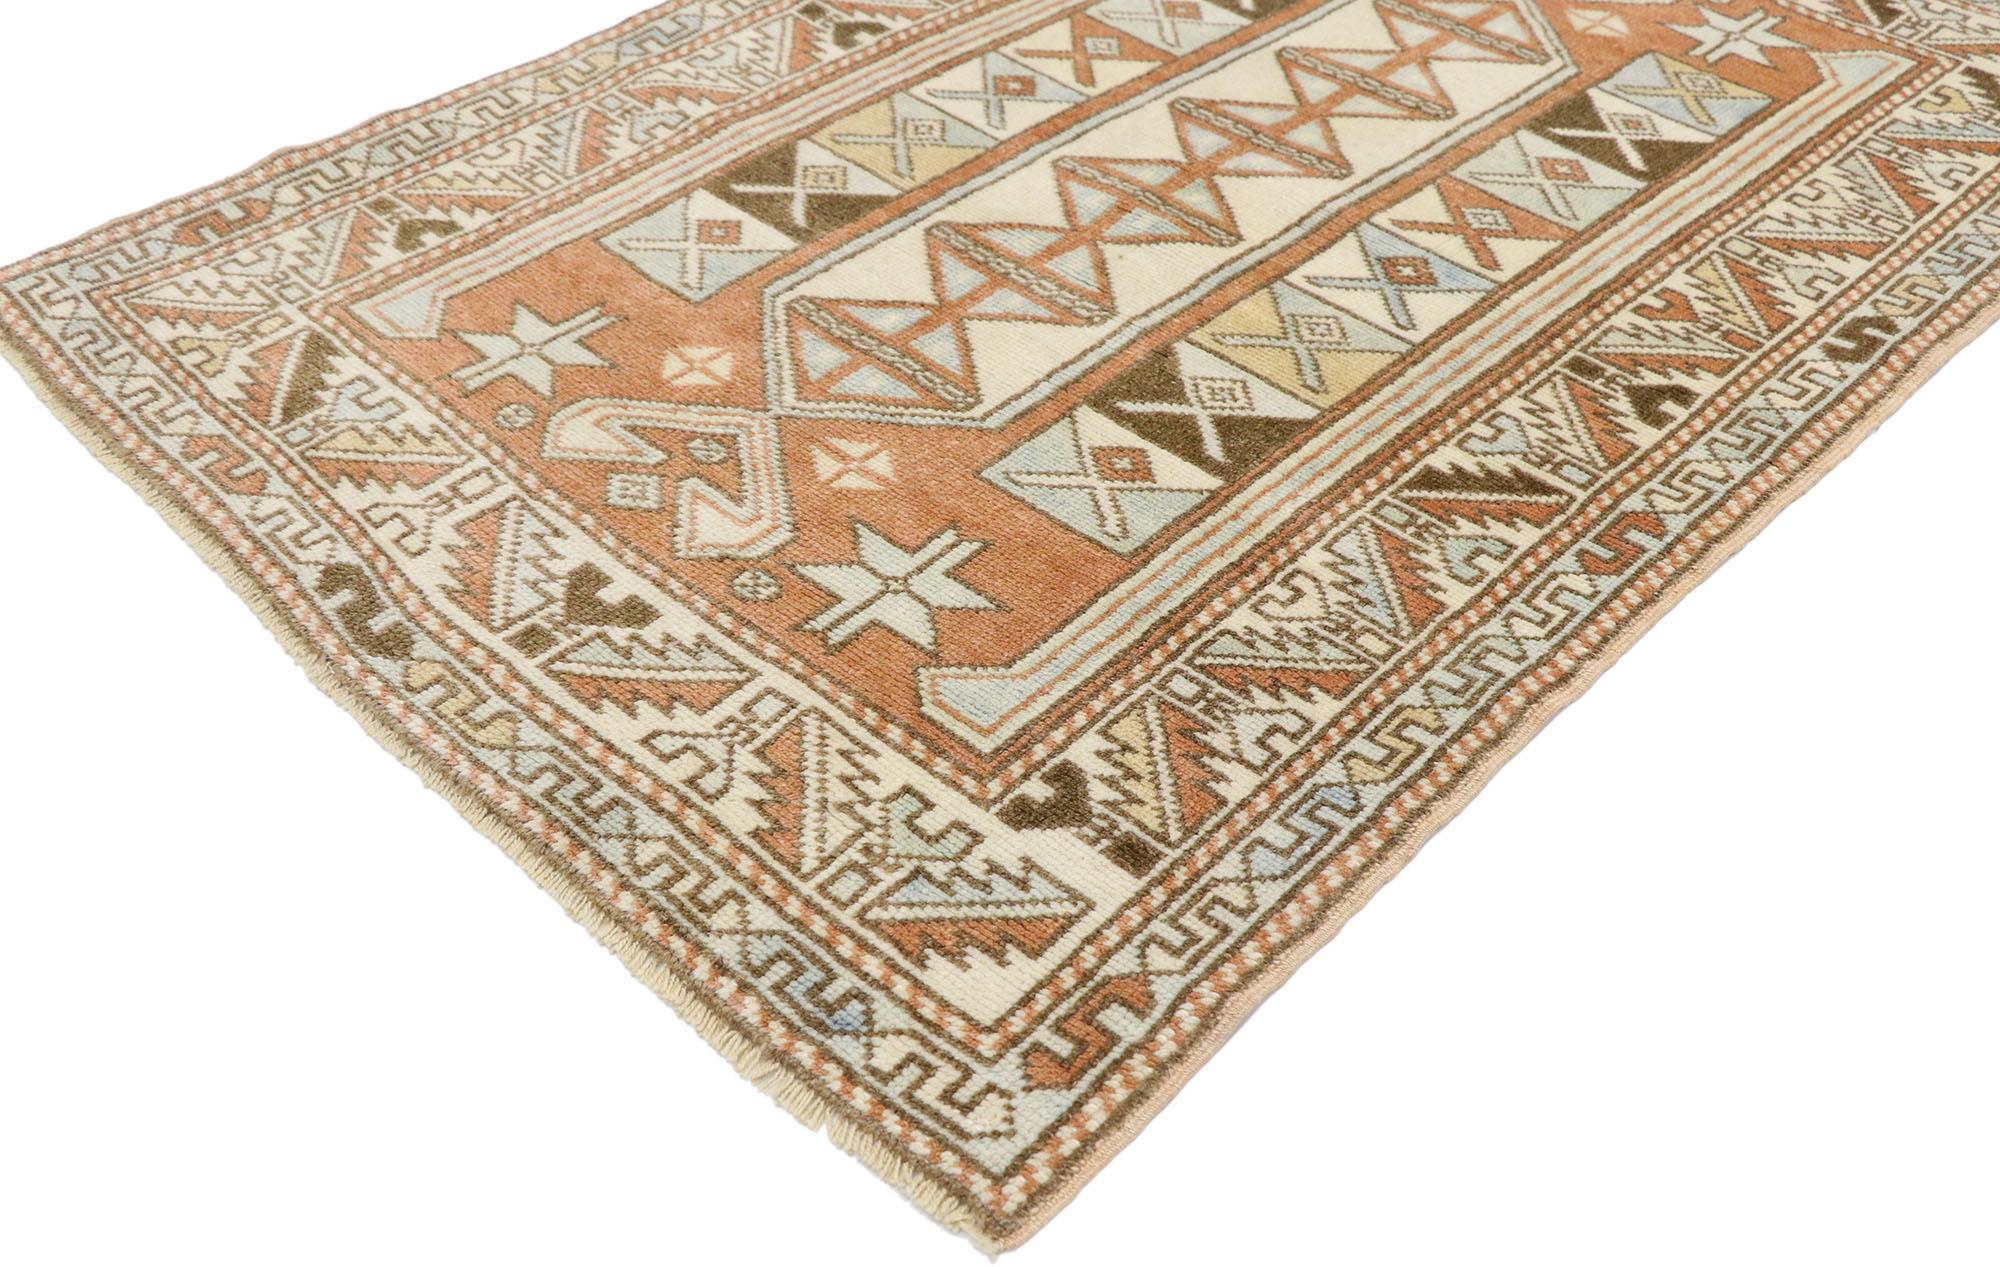 53522, tapis turc Oushak vintage avec style tribal sud-ouest 02'10 x 04'03. Plein de détails minuscules et d'un design expressif audacieux combiné à des couleurs exubérantes et au style du Sud-Ouest, ce tapis Oushak turc vintage en laine noué à la